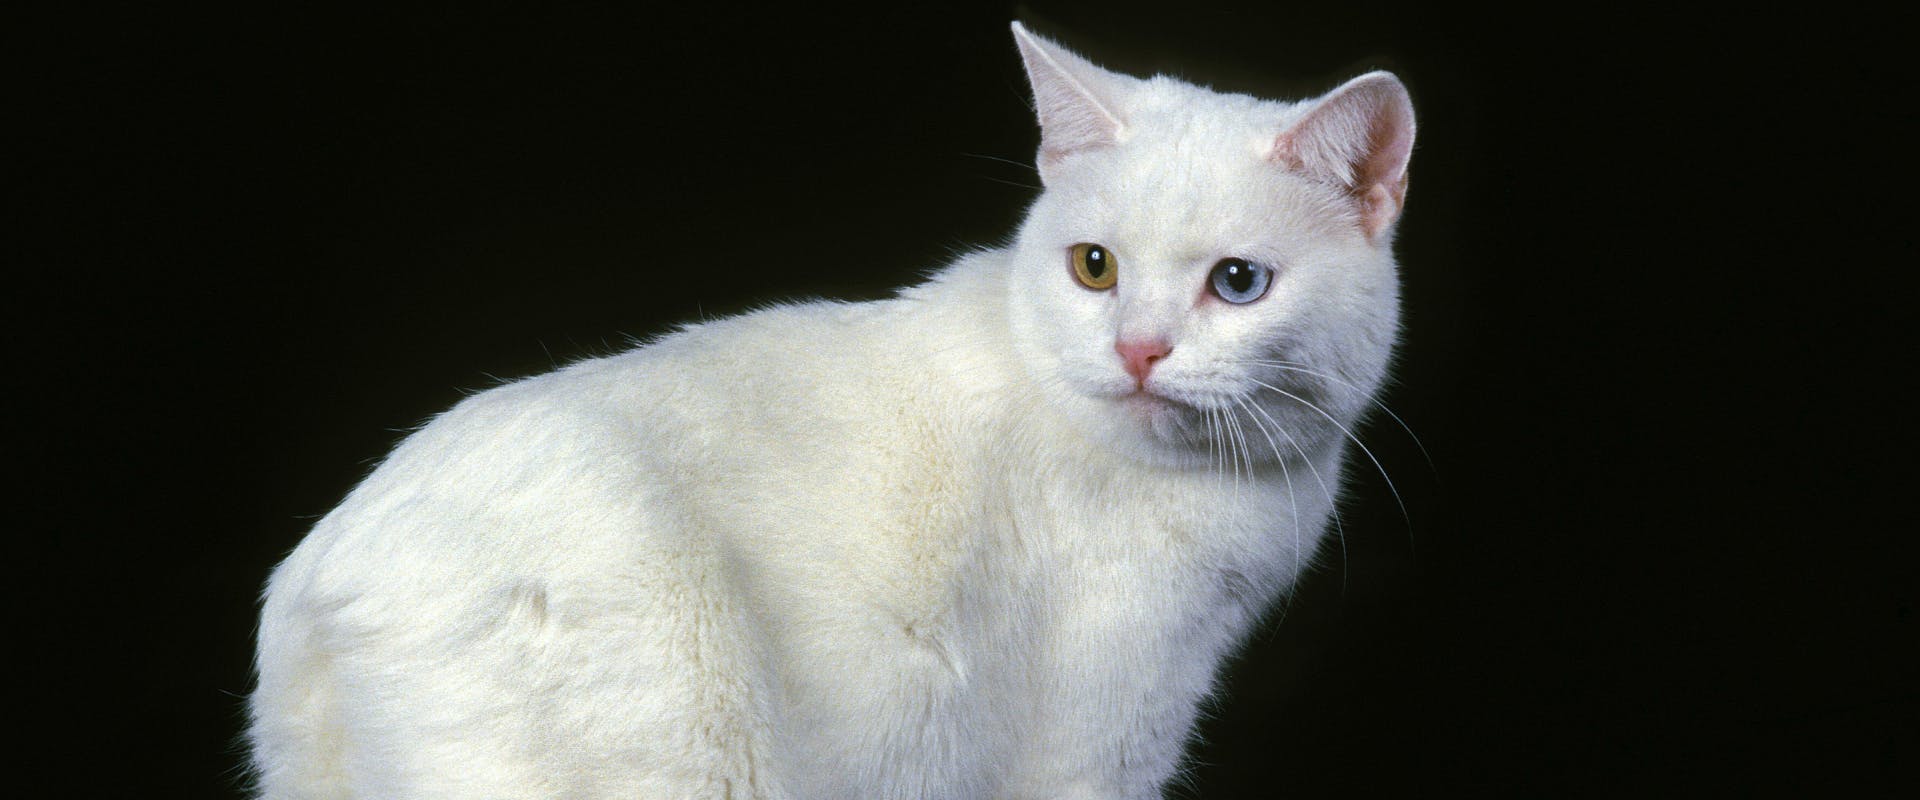 white short haired Manx cat